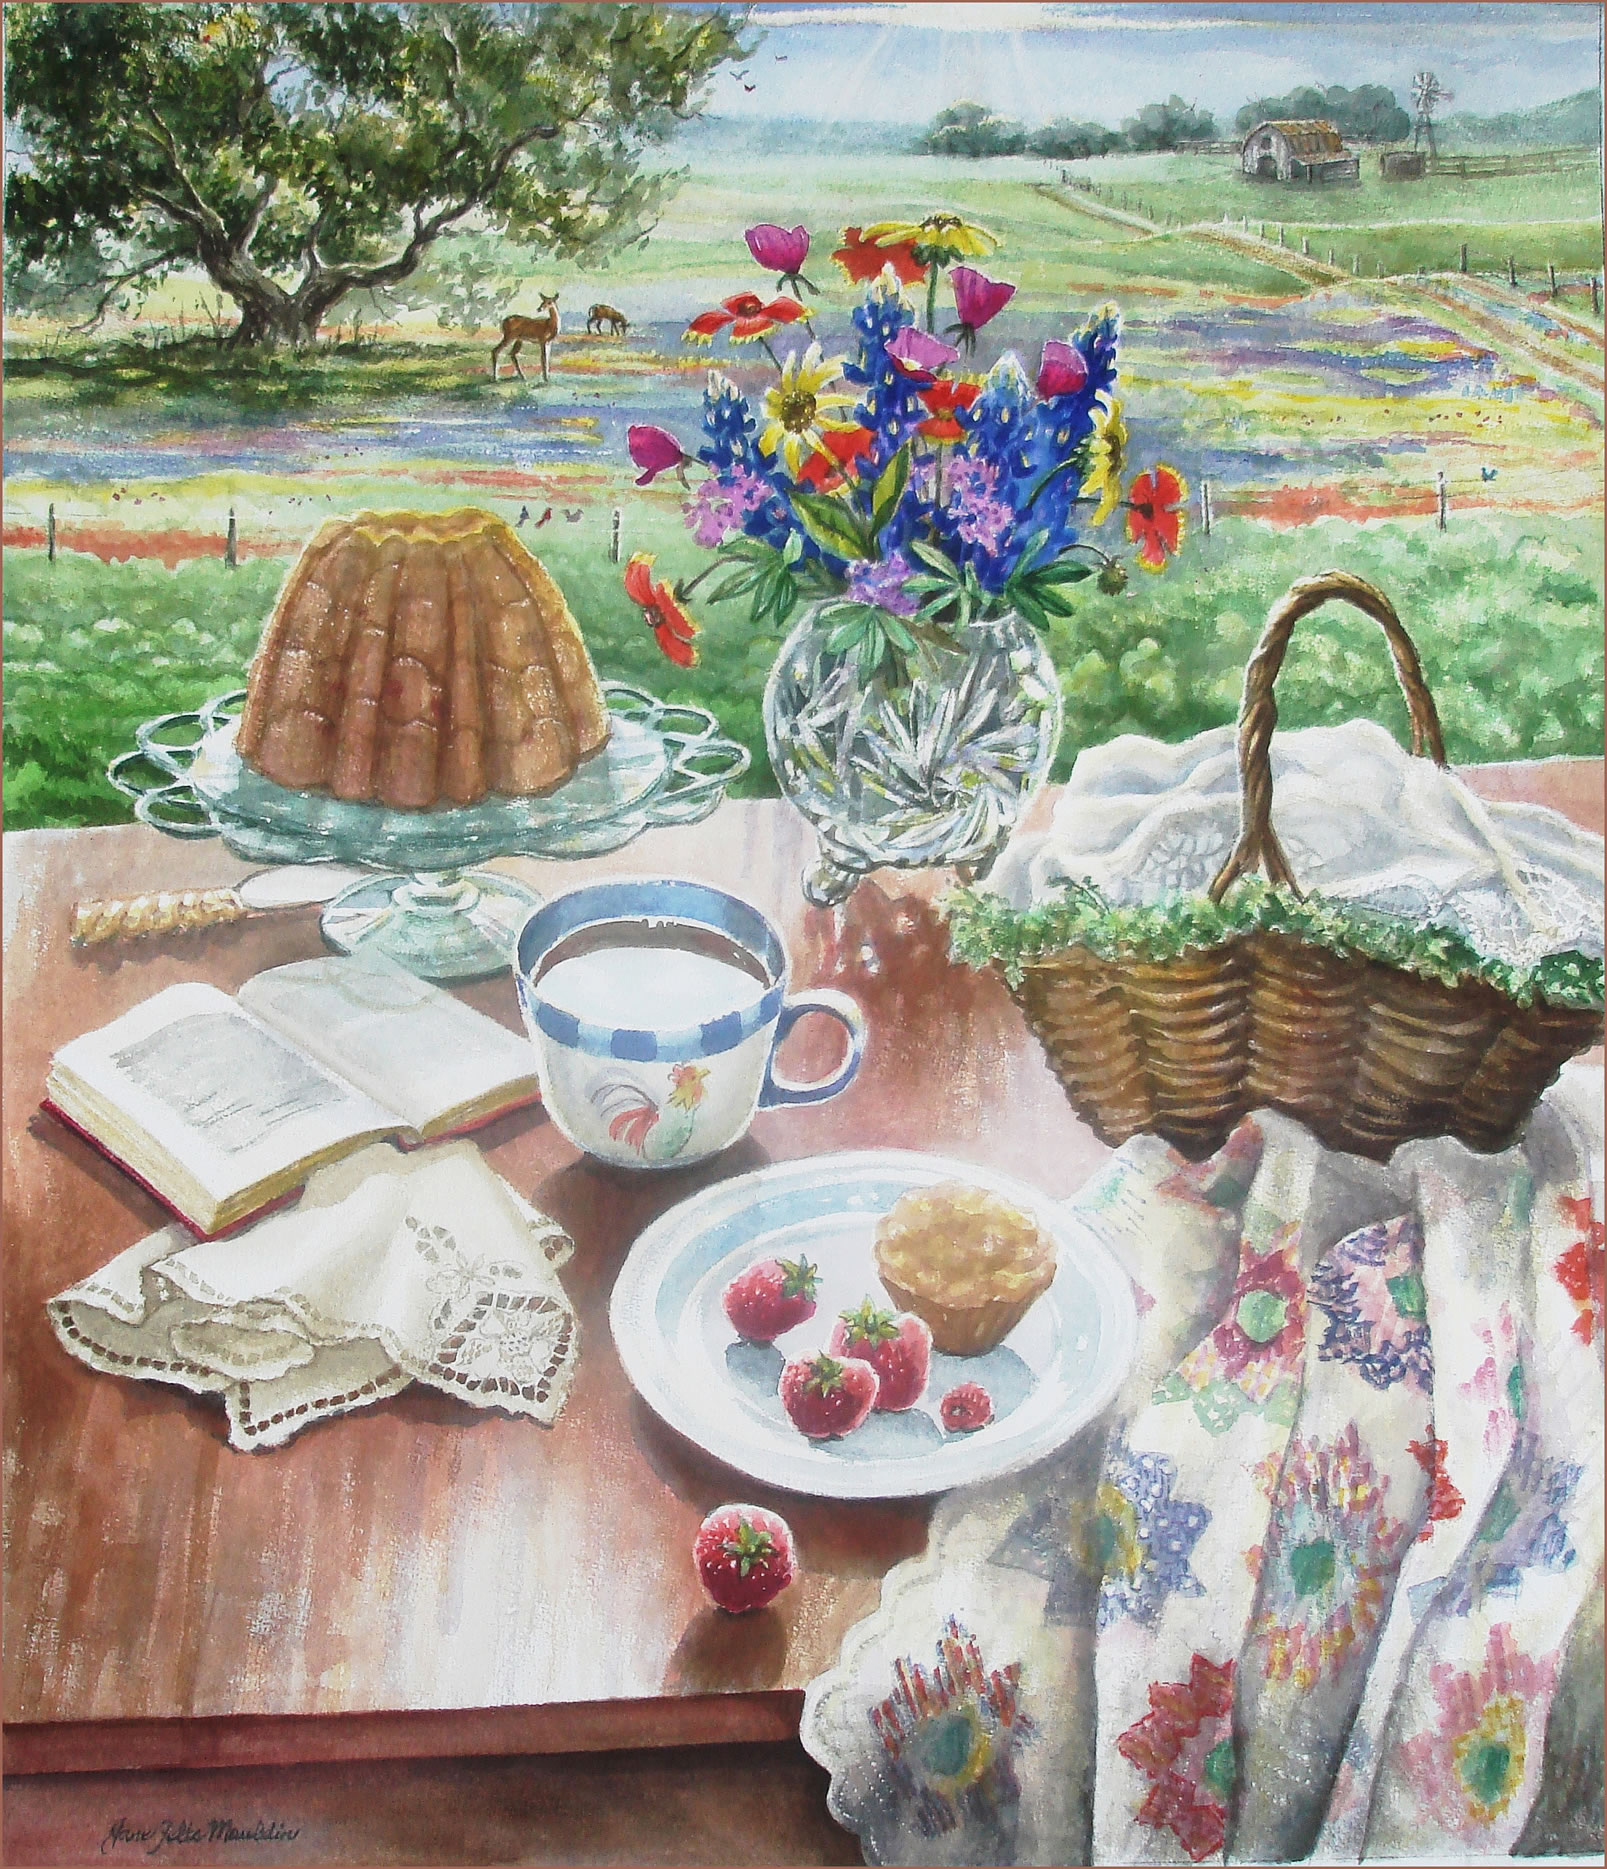 Image of Breakfast Alfresco by Jane Felts Mauldin